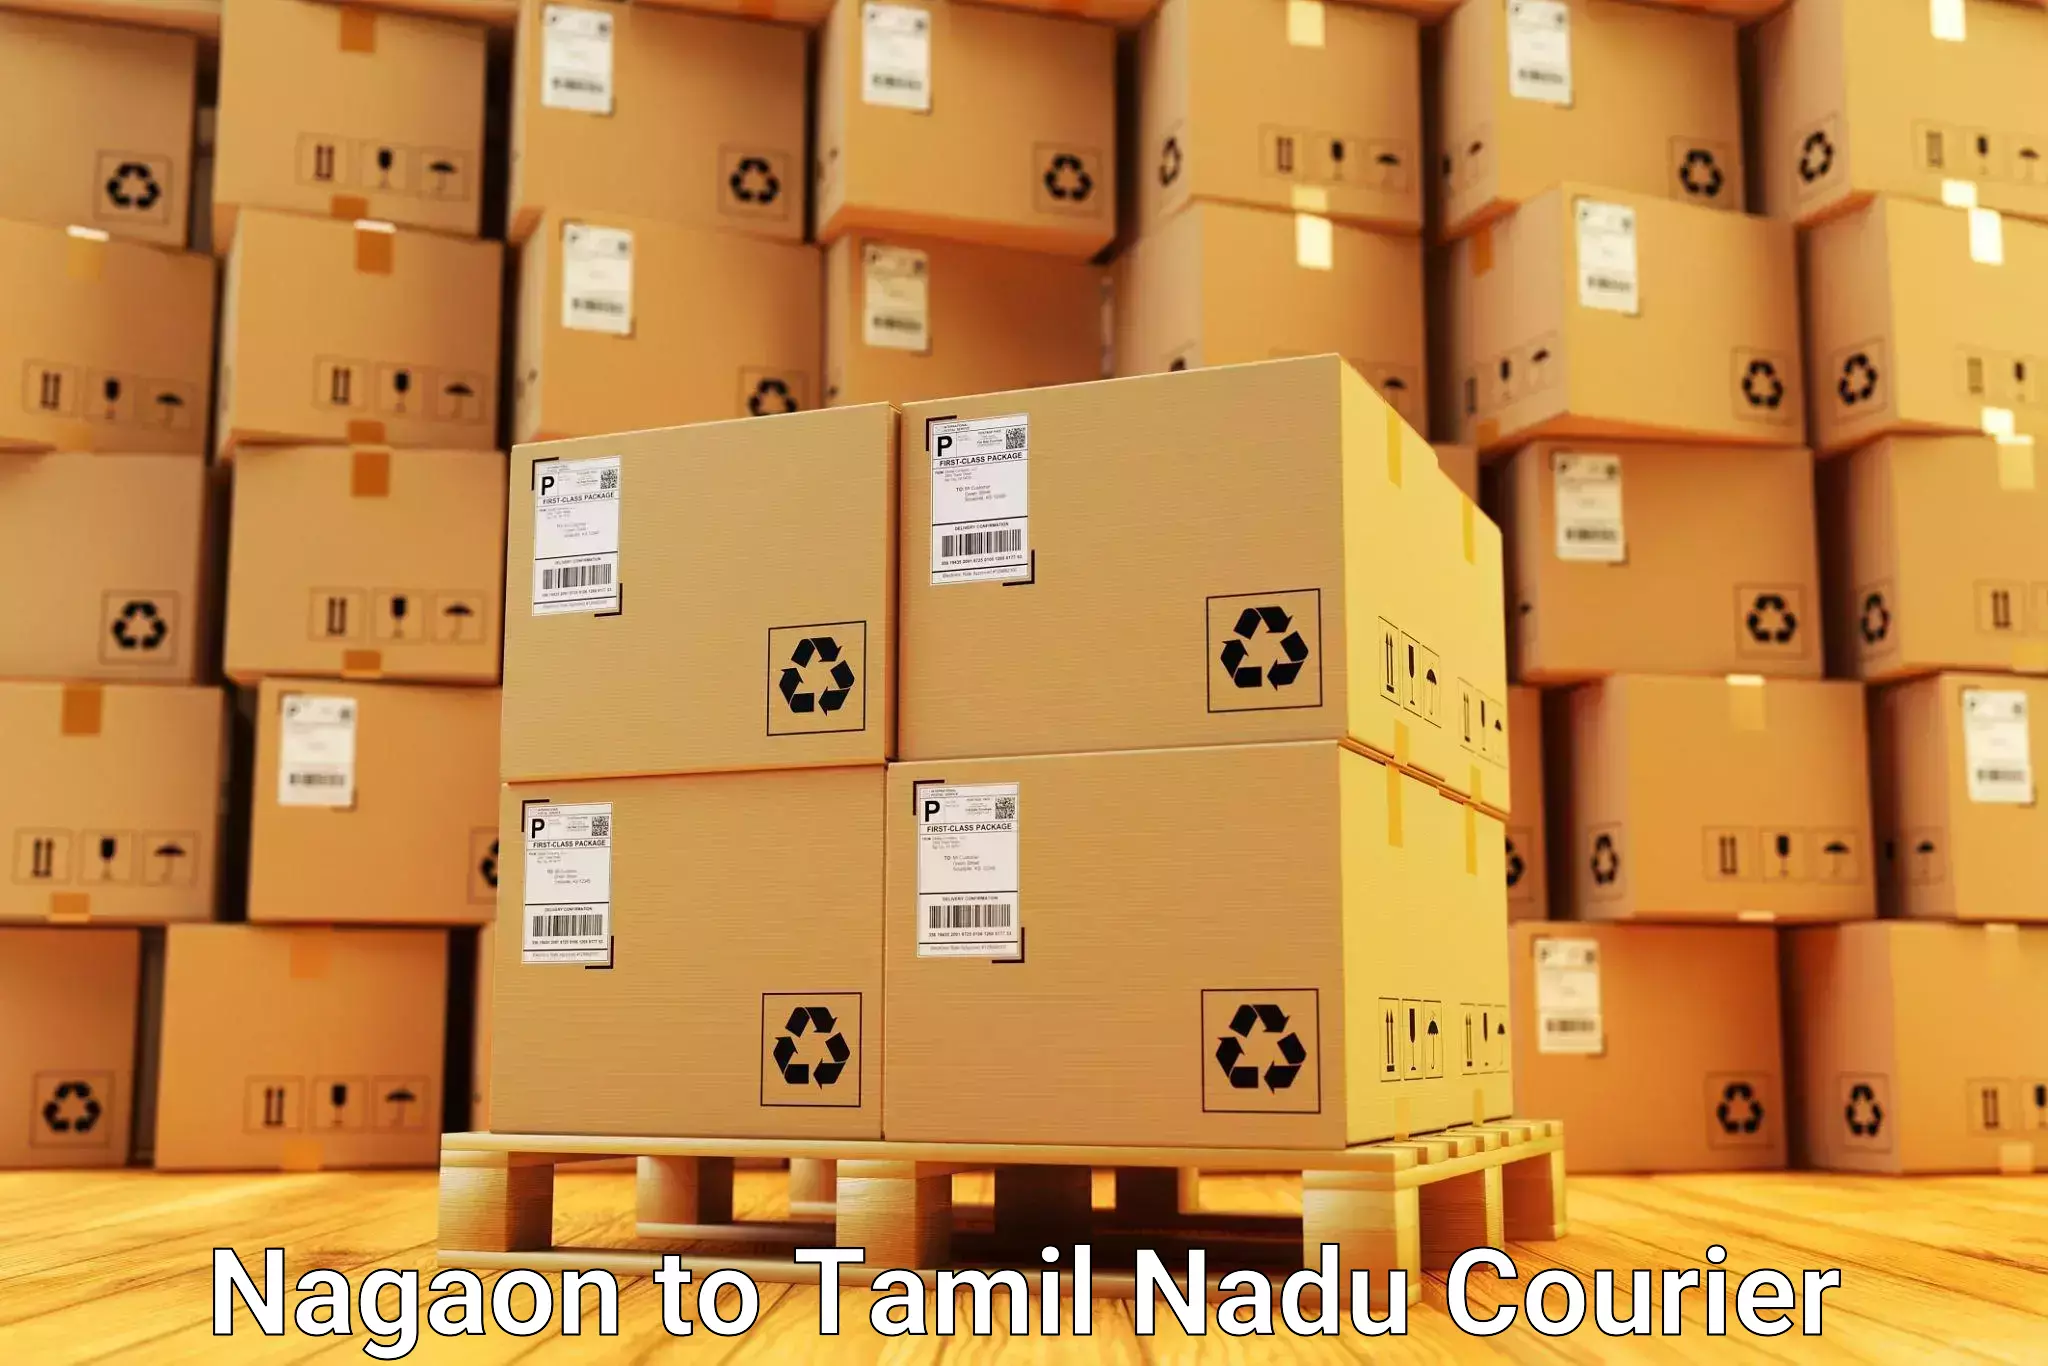 Moving and packing experts Nagaon to Mettupalayam